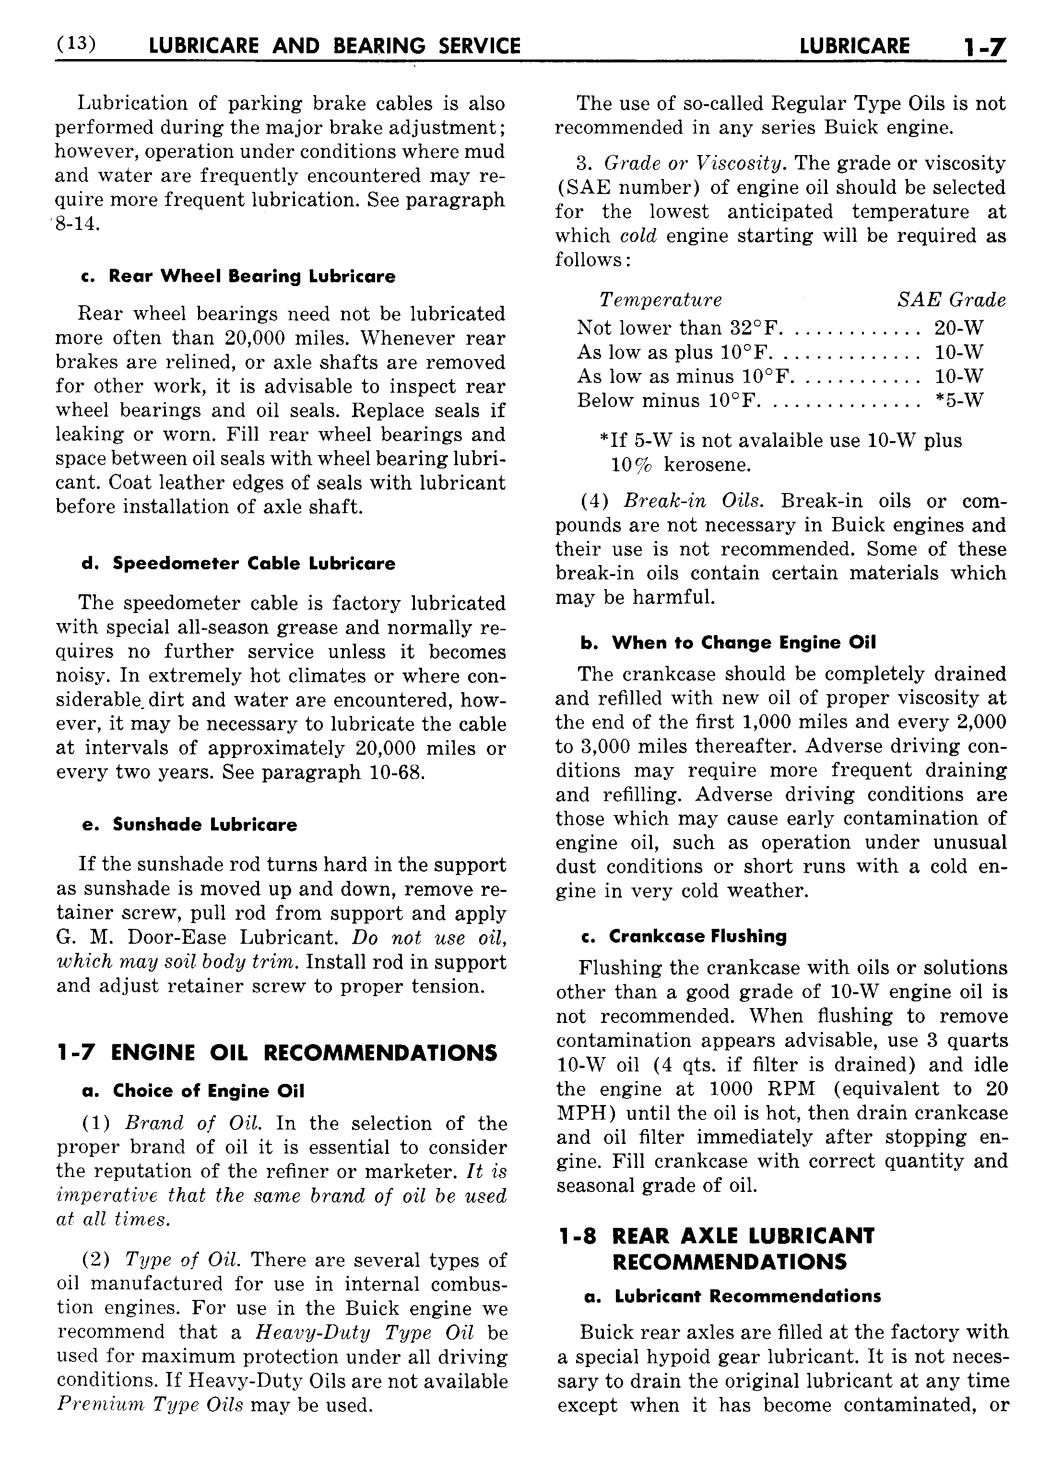 n_02 1951 Buick Shop Manual - Lubricare-007-007.jpg